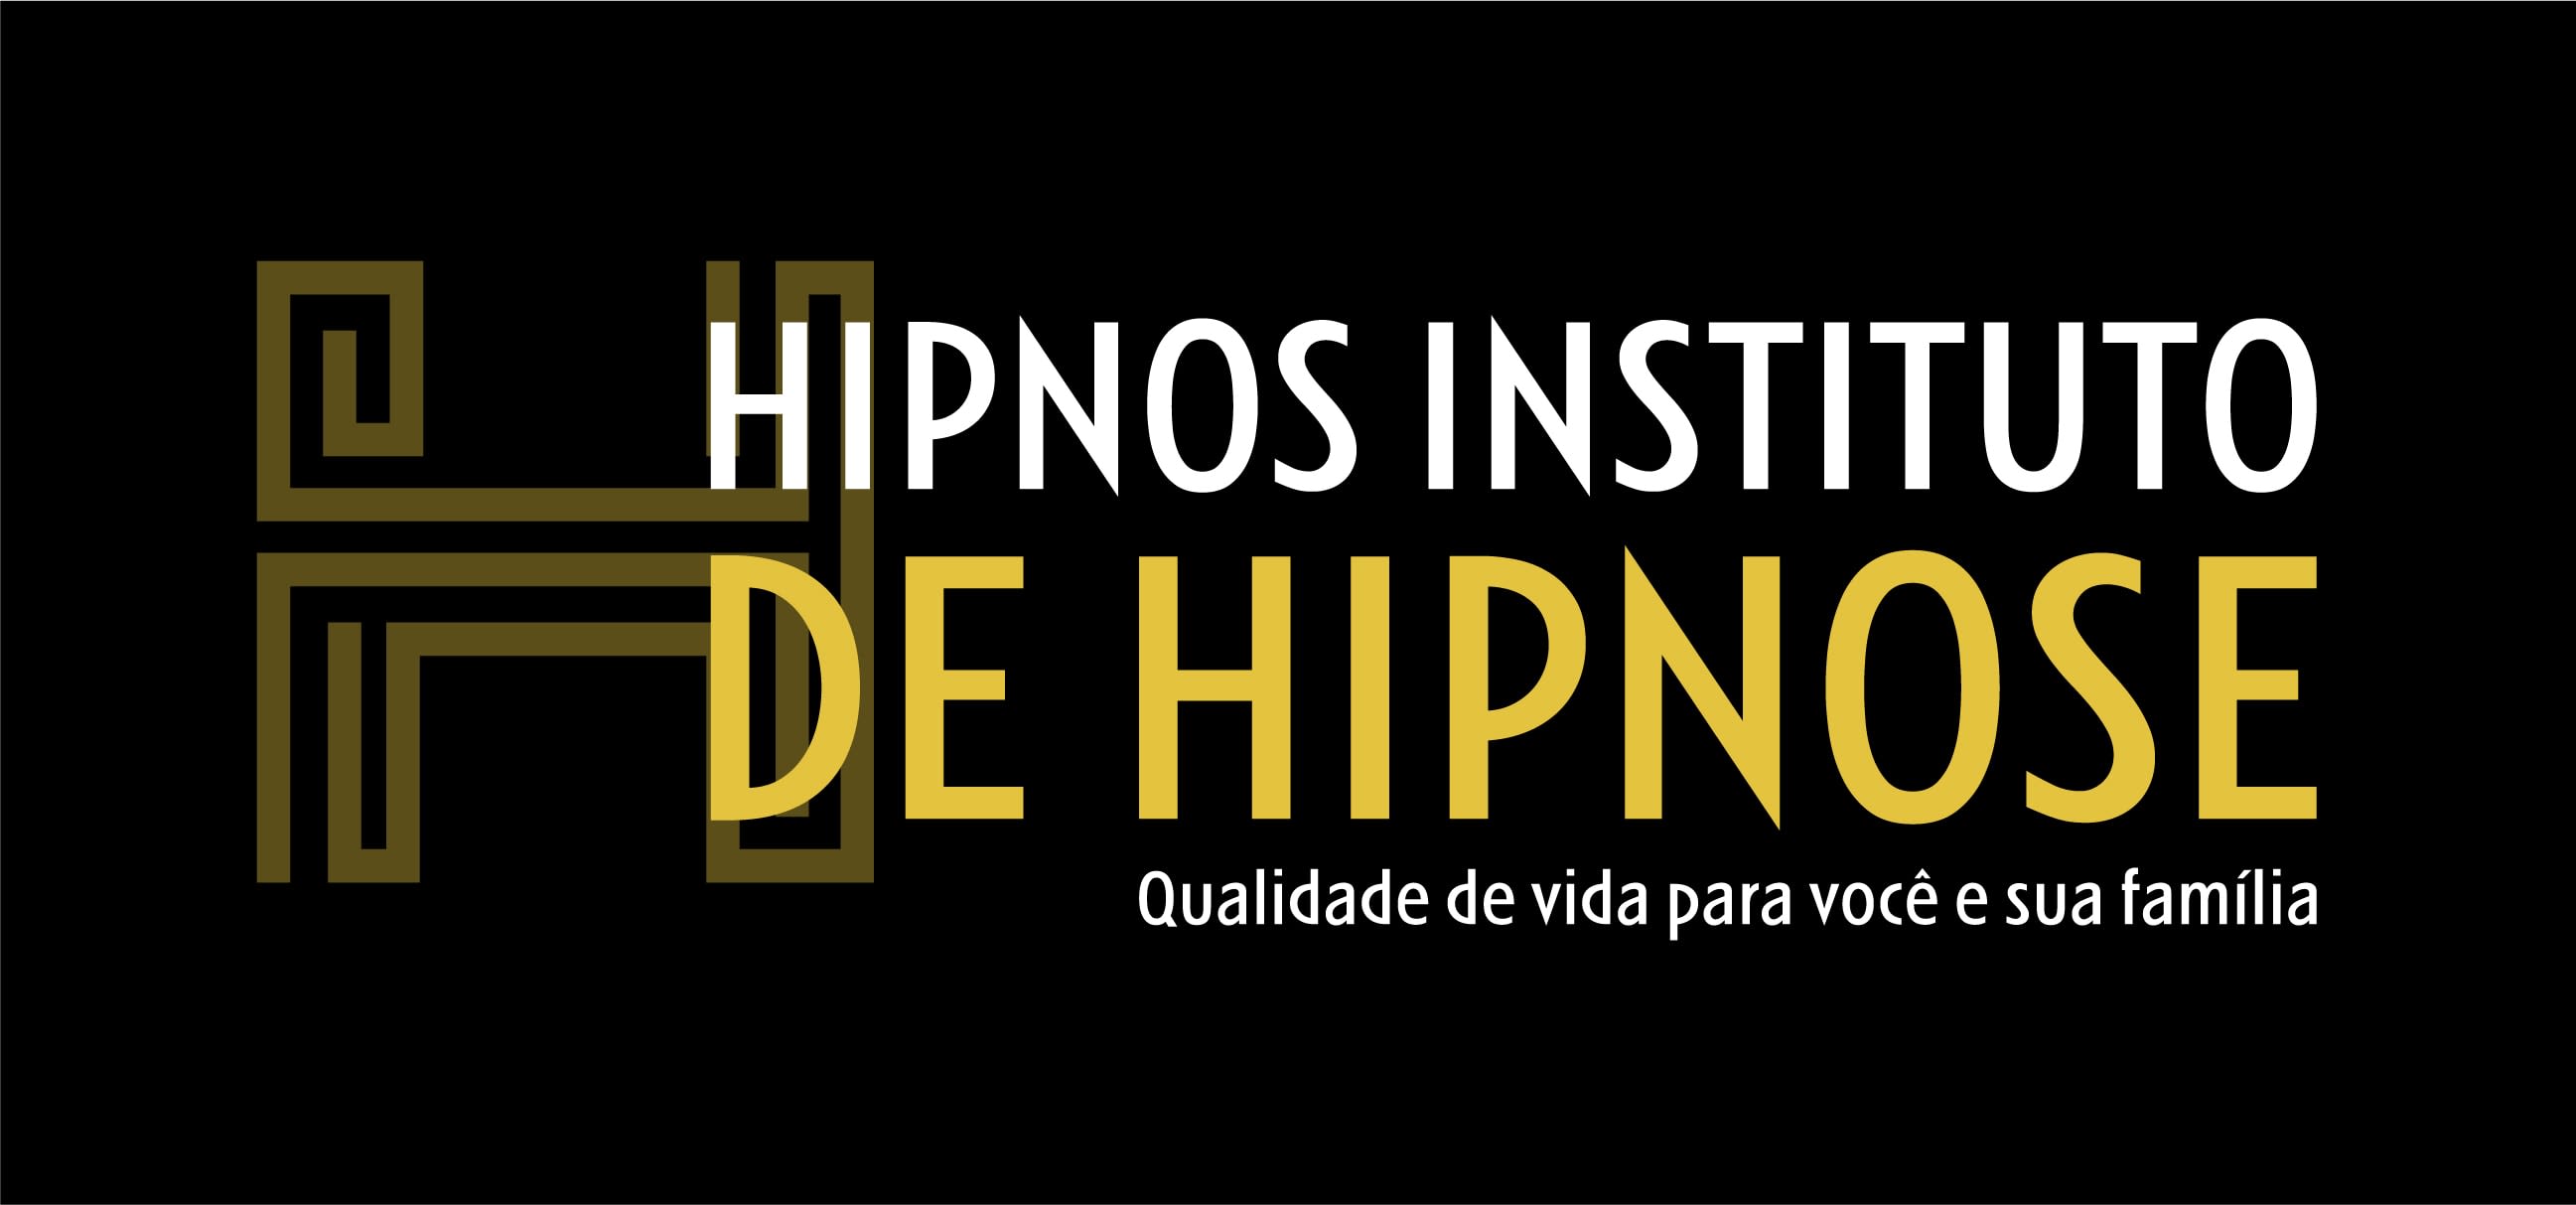 Hipnos Instituto de Hipnose